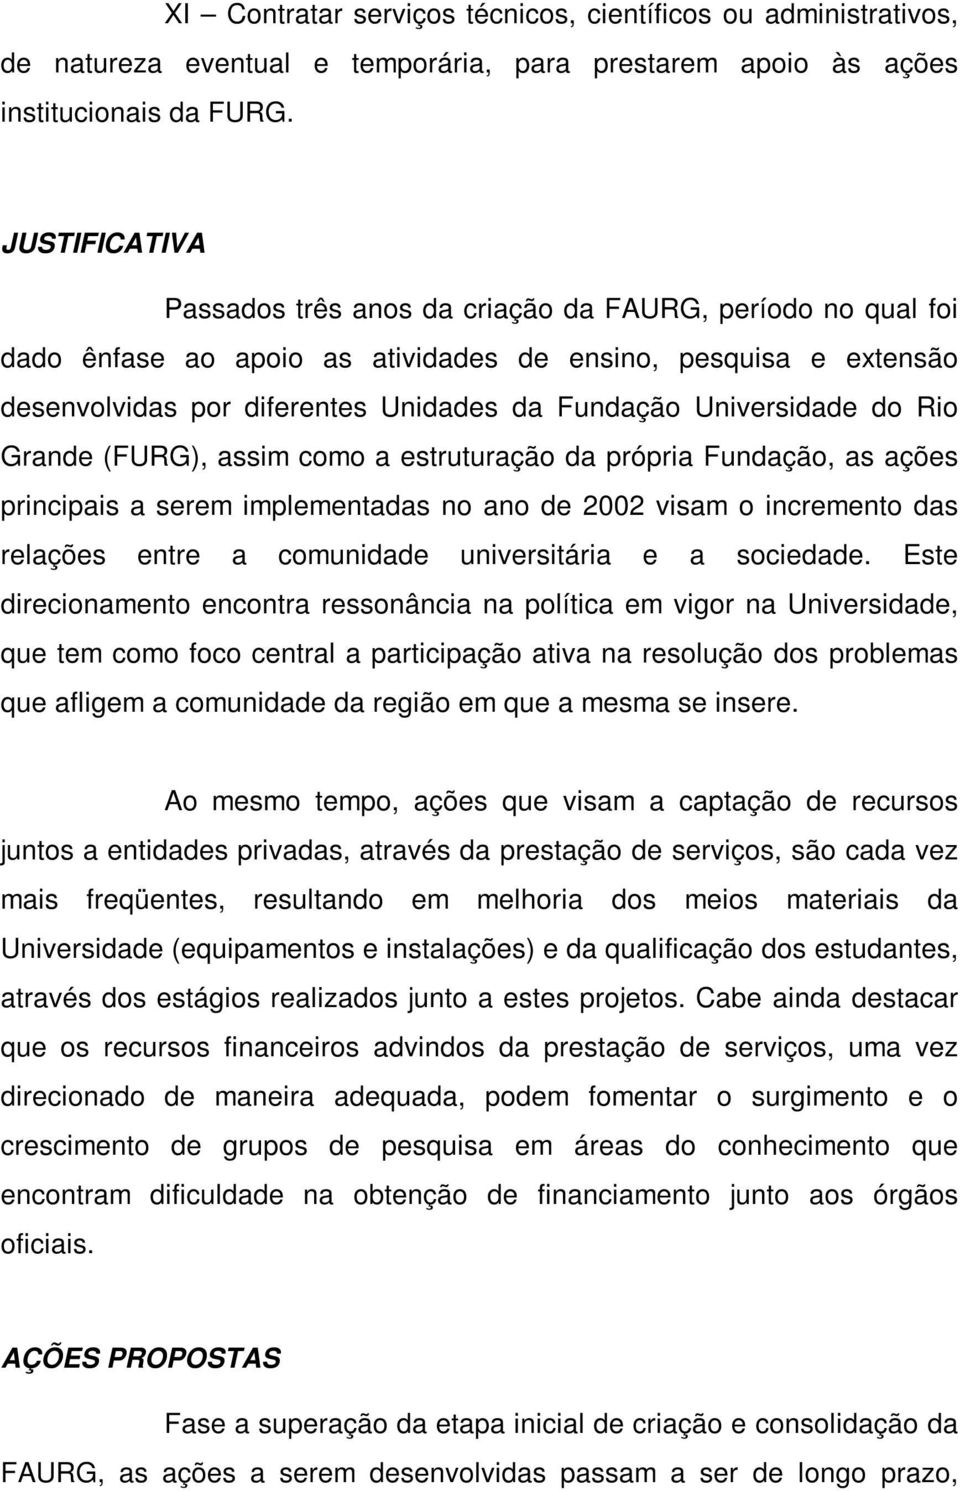 Universidade do Rio Grande (FURG), assim como a estruturação da própria Fundação, as ações principais a serem implementadas no ano de 2002 visam o incremento das relações entre a comunidade